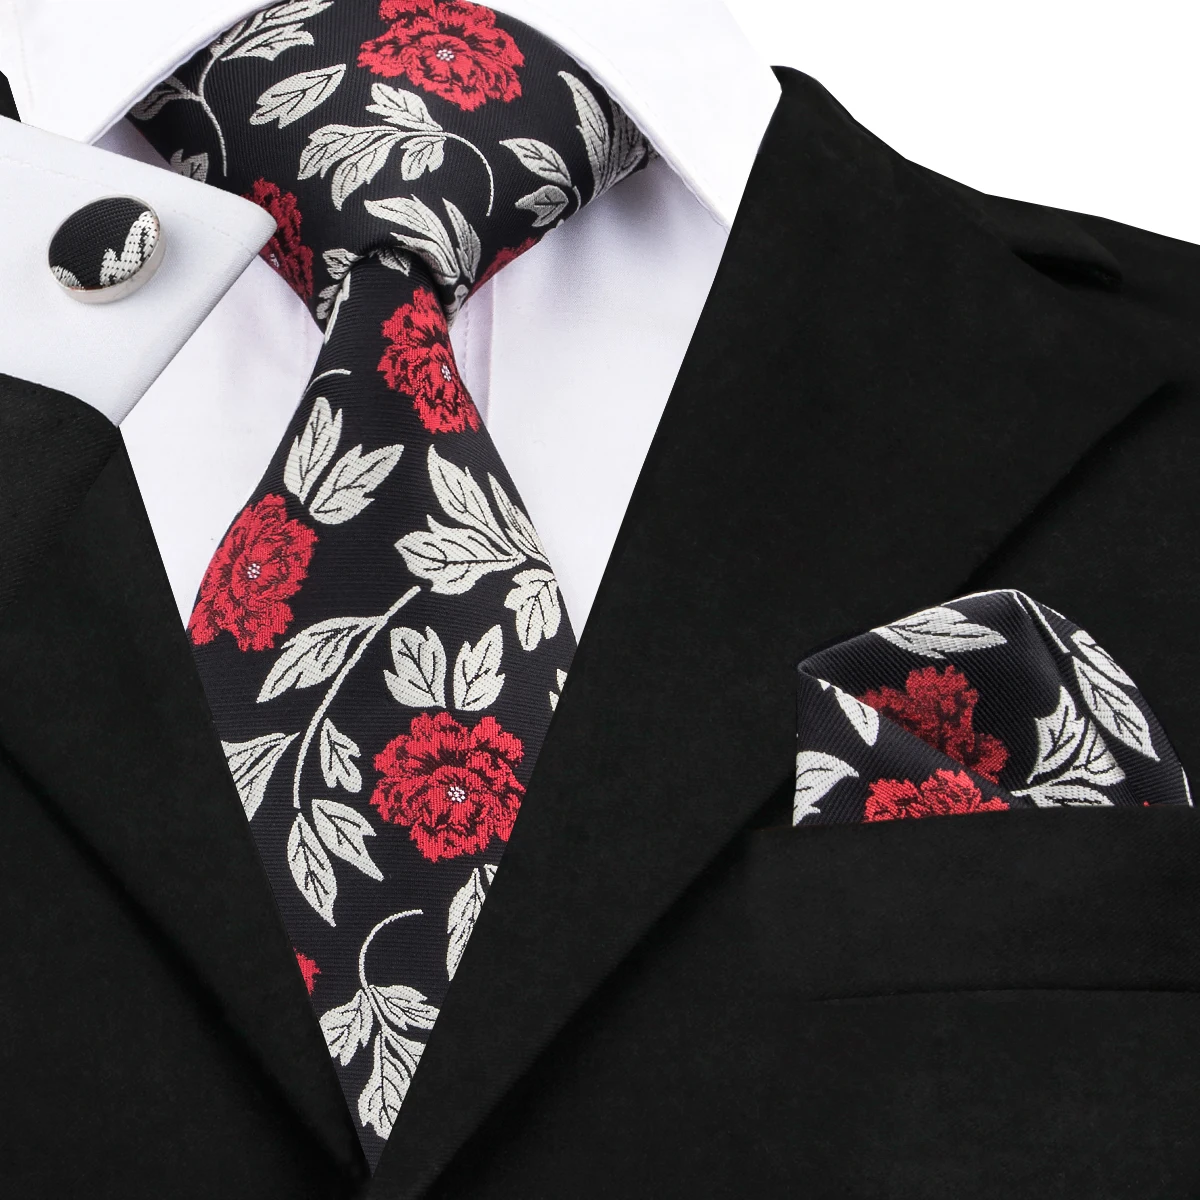 C-1708 Привет-галстук 2017 Для мужчин мода цветочным узором галстук для Для мужчин бизнес галстук Hanky запонки 100% шелк 8,5 см жаккардовые